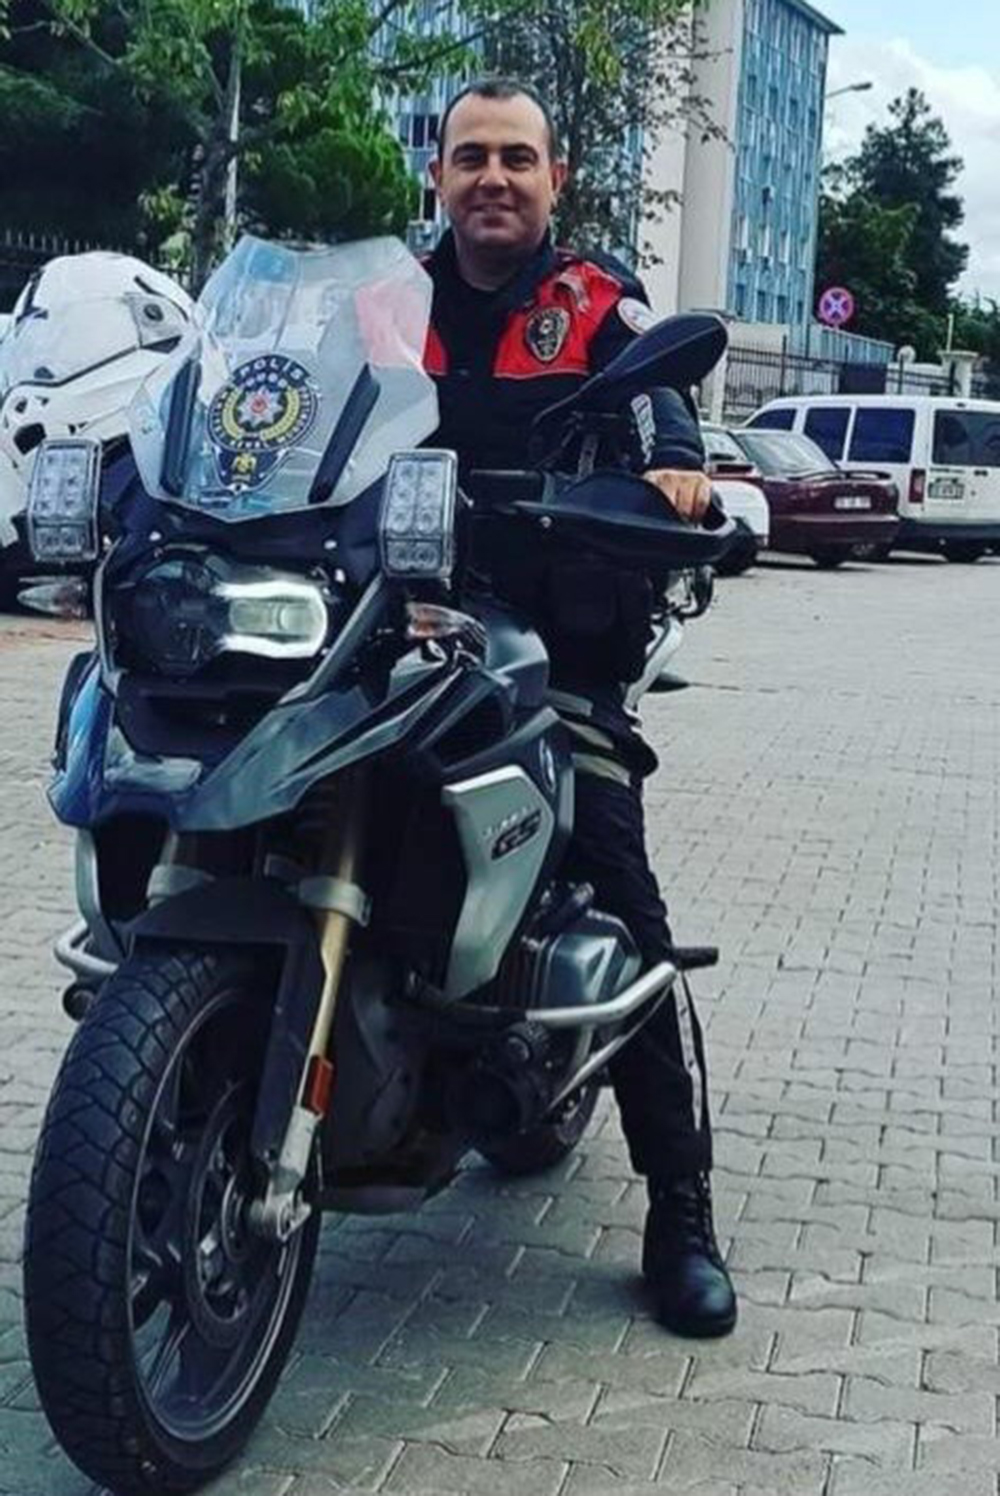 SAMSUN'DA POLİS MOTOSİKLETİ ÇEKİCİ İLE ÇARPIŞTI: 1 POLİS ŞEHİT OLDU, 1 POLİS YARALANDI